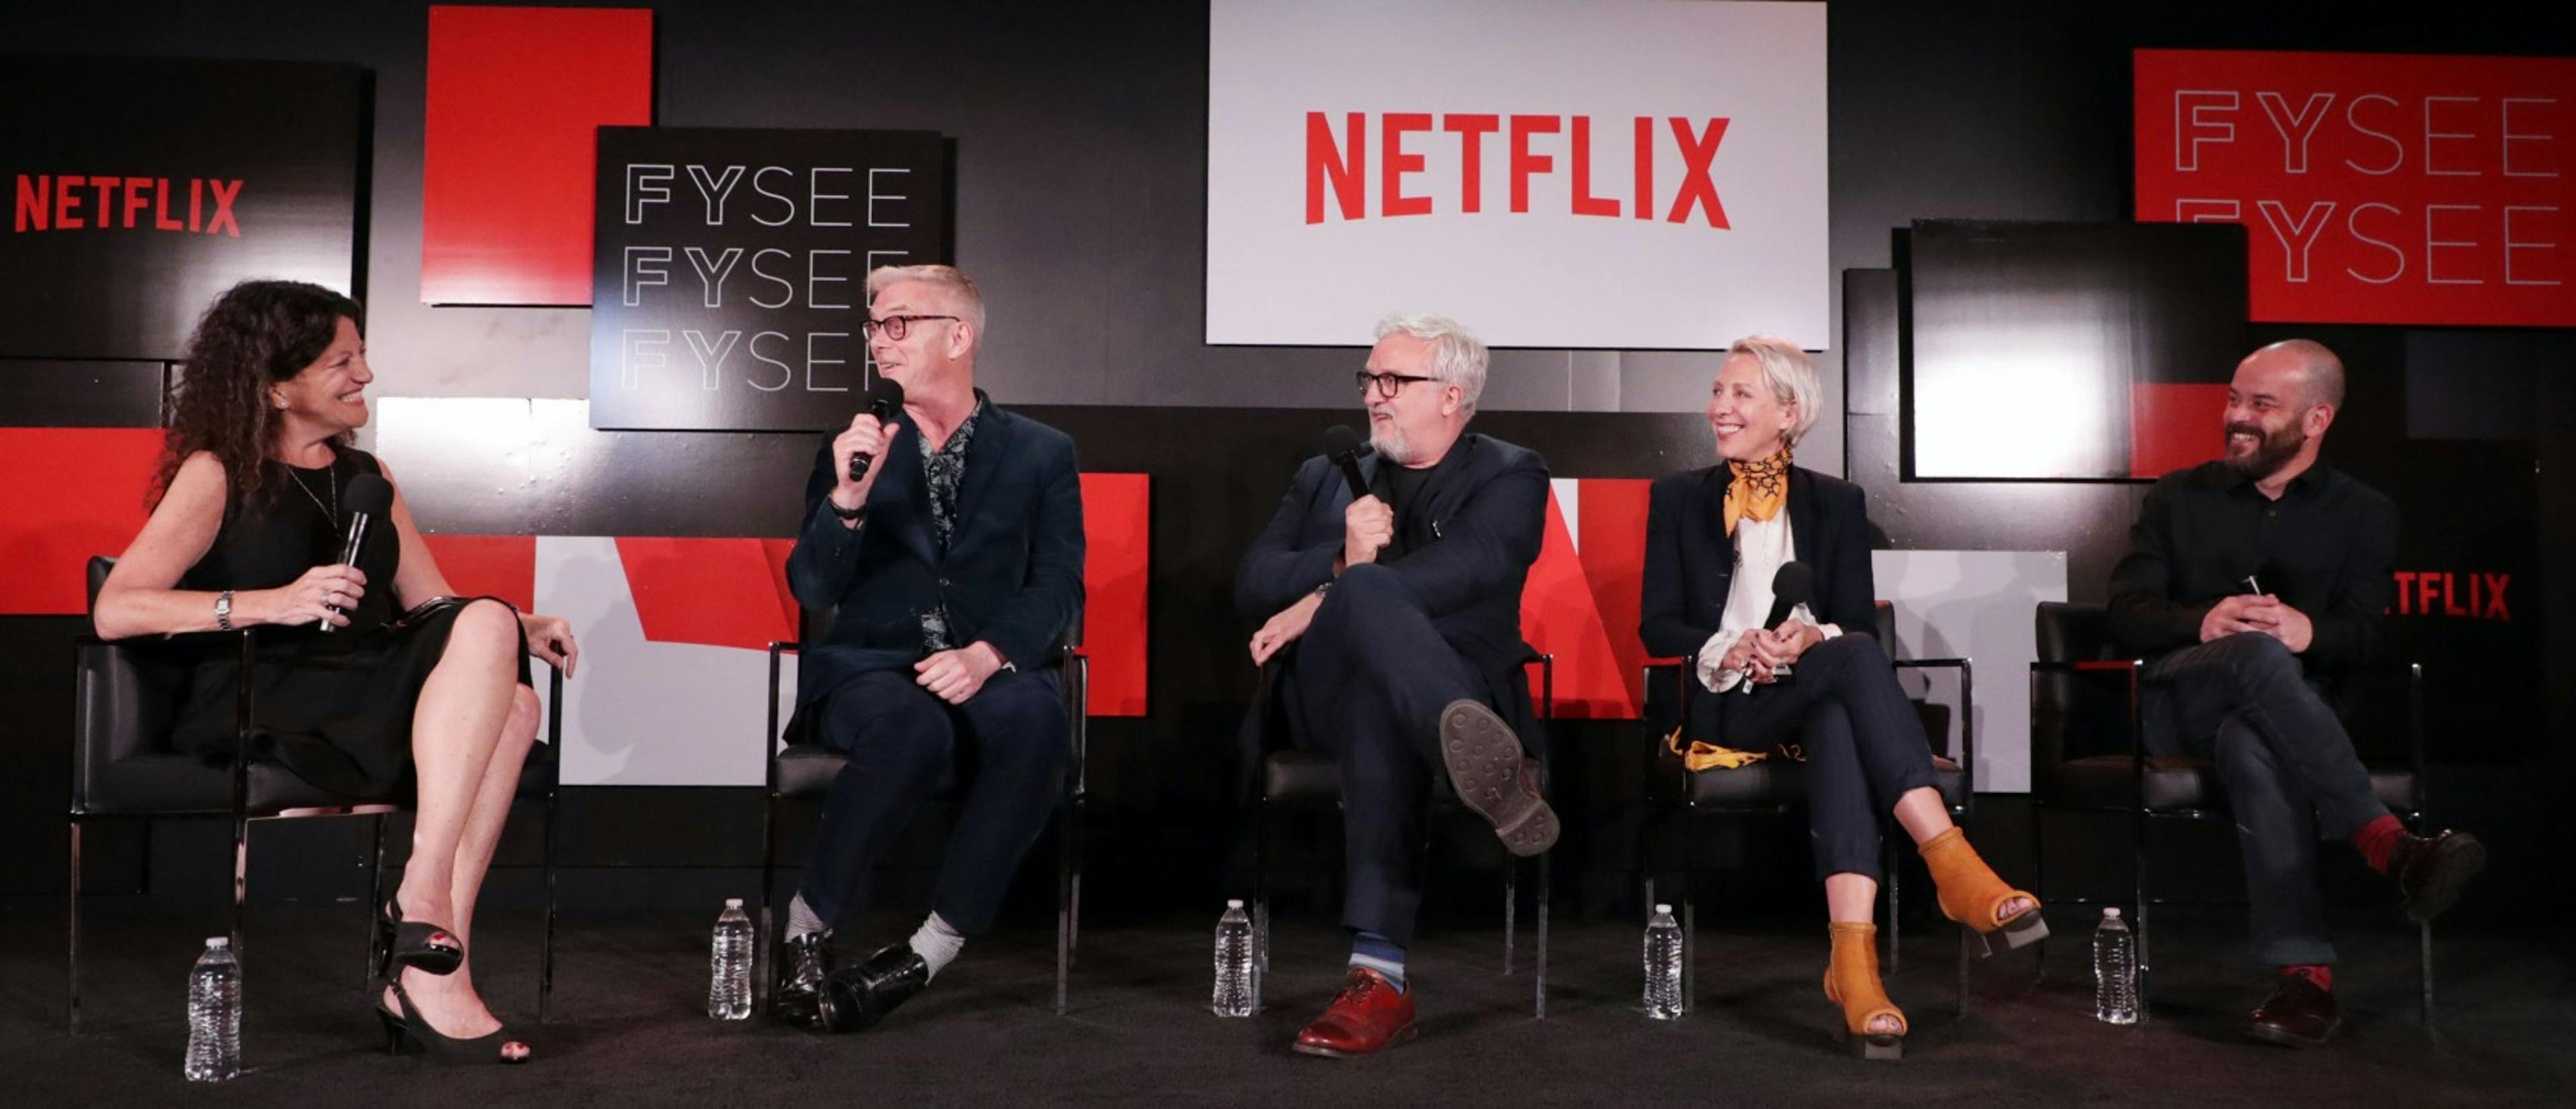 Evento FYC para los Emmy de la primera temporada de 'The Crown' en Netflix.